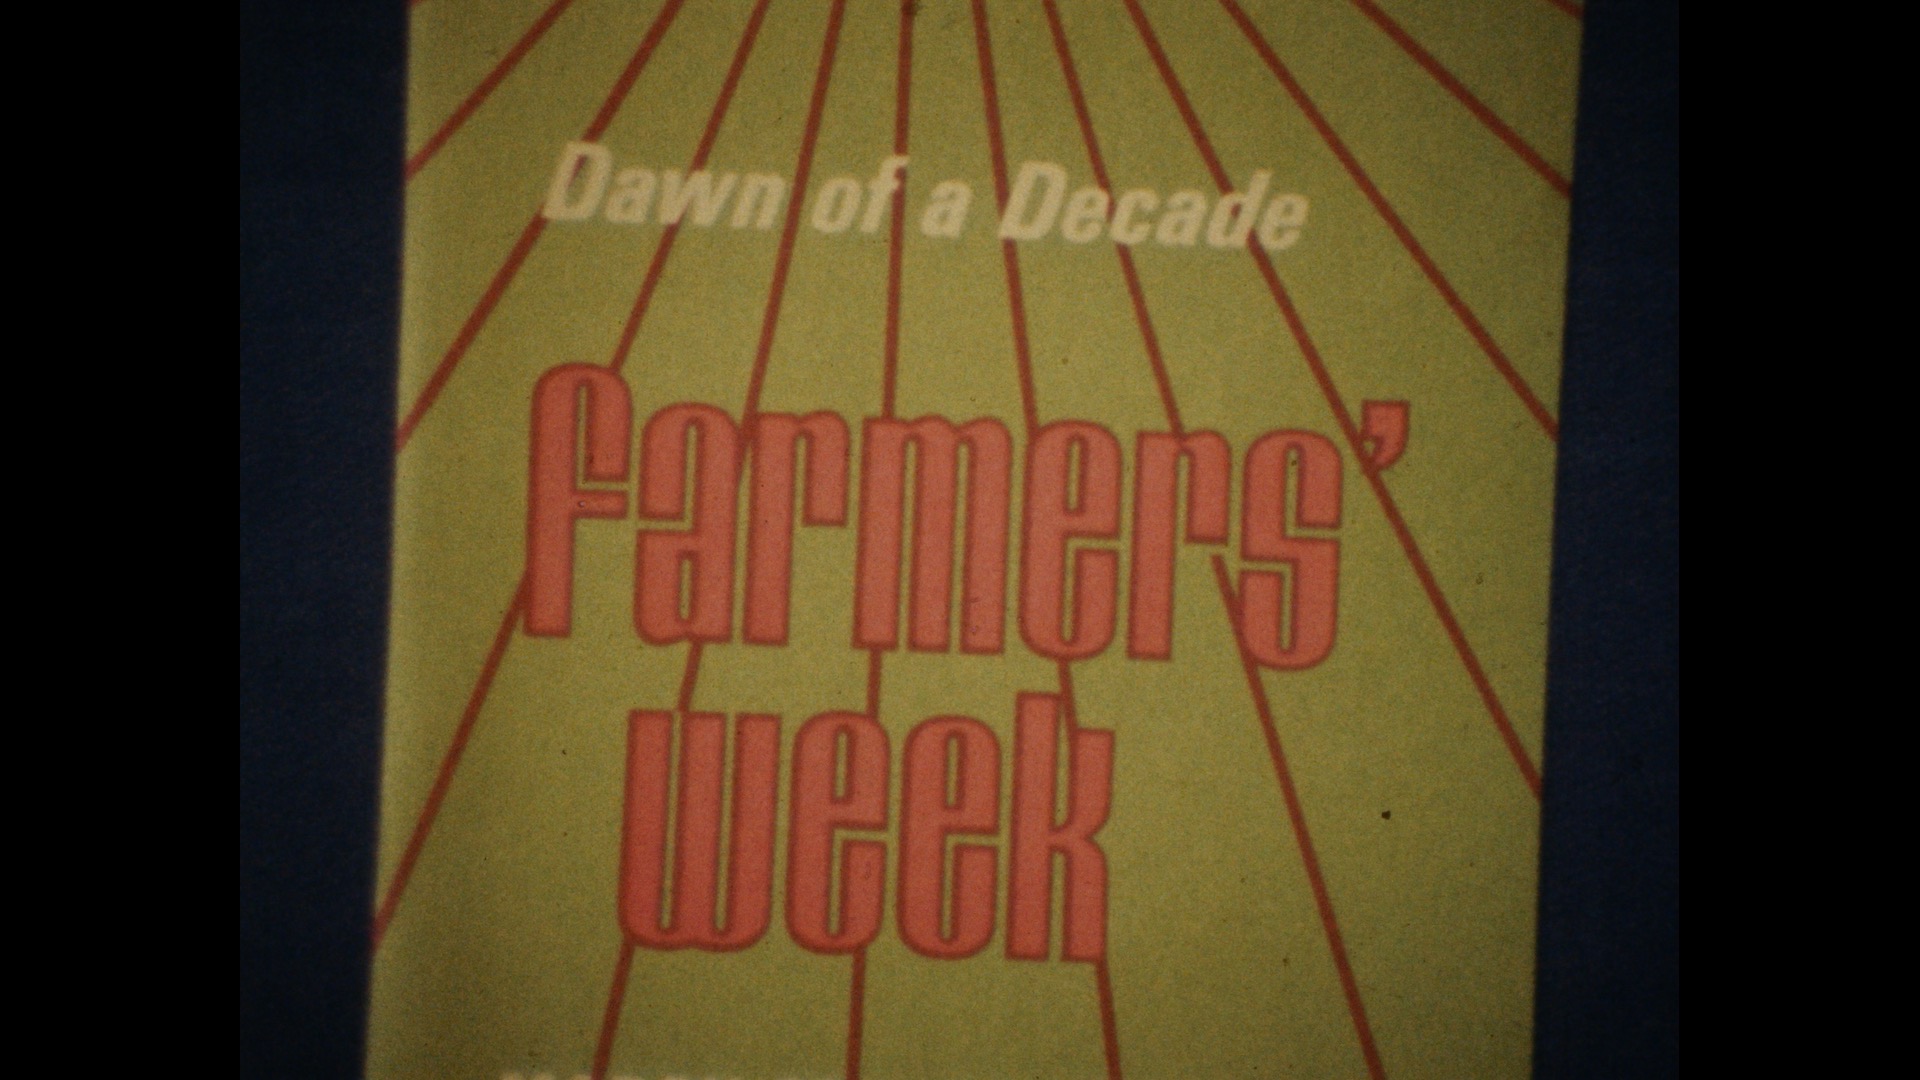 Farmers' Week "Dawn of a Decade", 1970